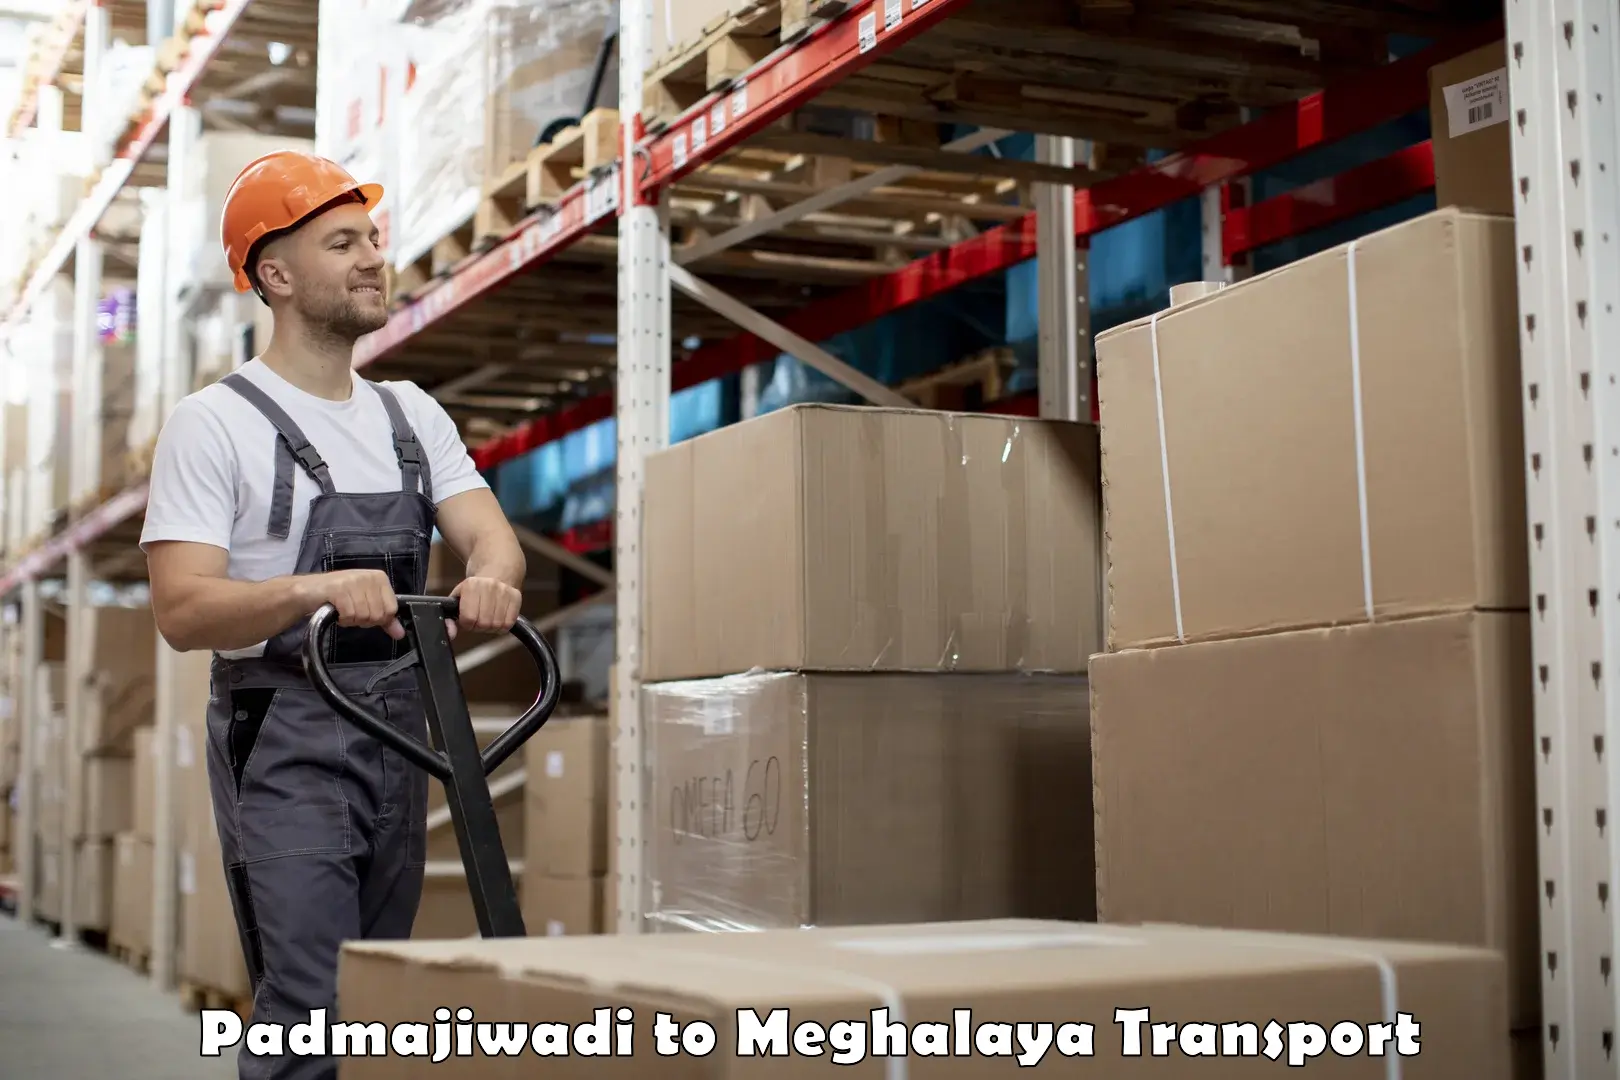 Truck transport companies in India Padmajiwadi to NIT Meghalaya